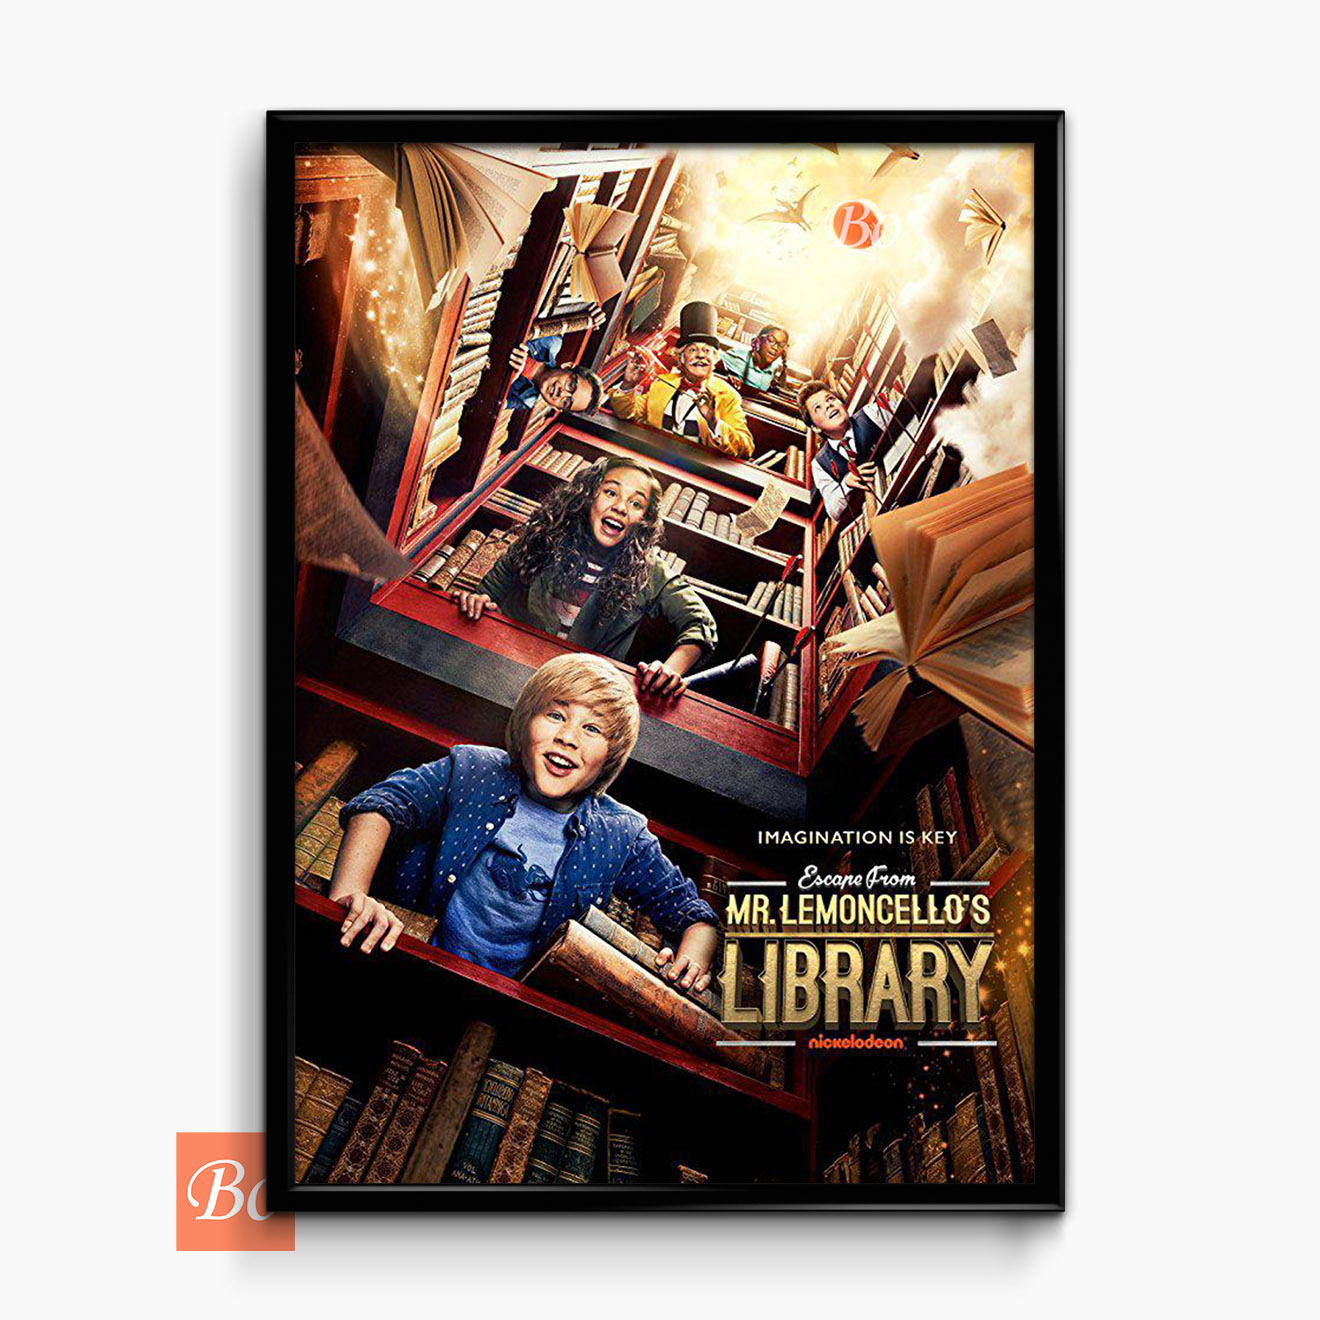 神奇图书馆 Escape from Mr. Lemoncello’s Library 电影 (2017)